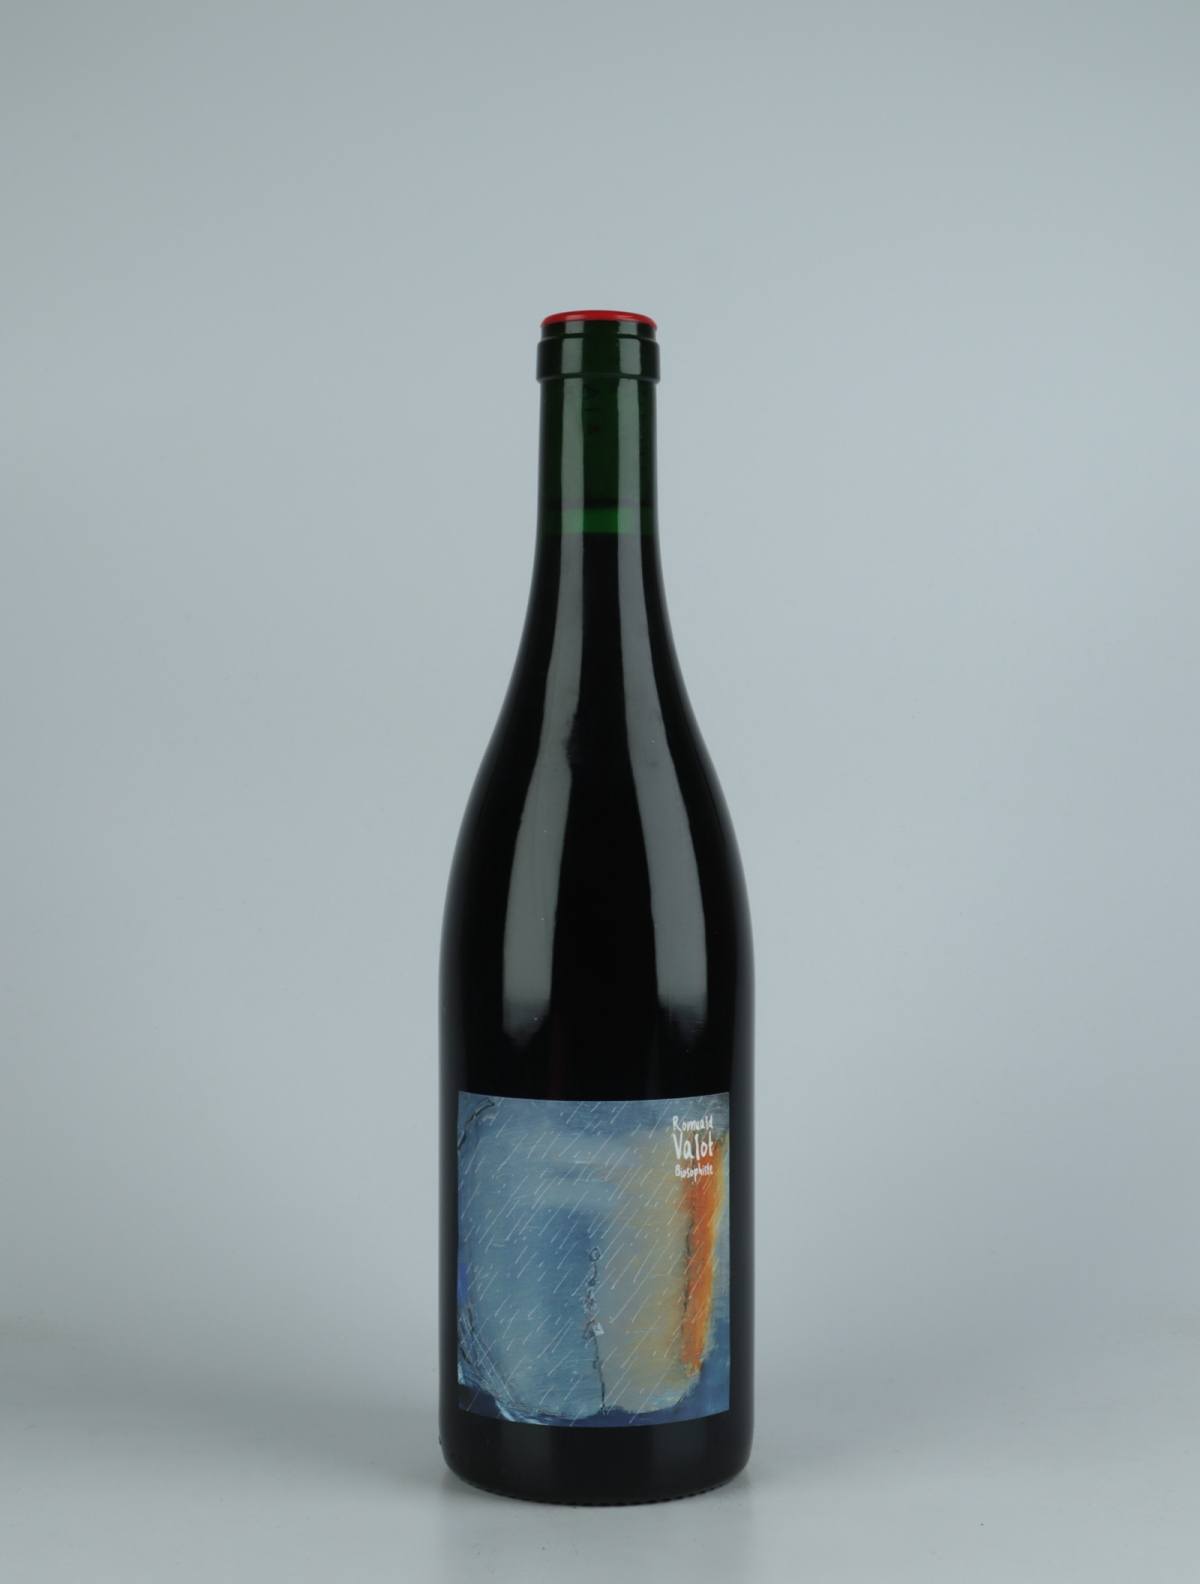 En flaske 2021 Temps de Chien Rødvin fra Romuald Valot, Beaujolais i Frankrig